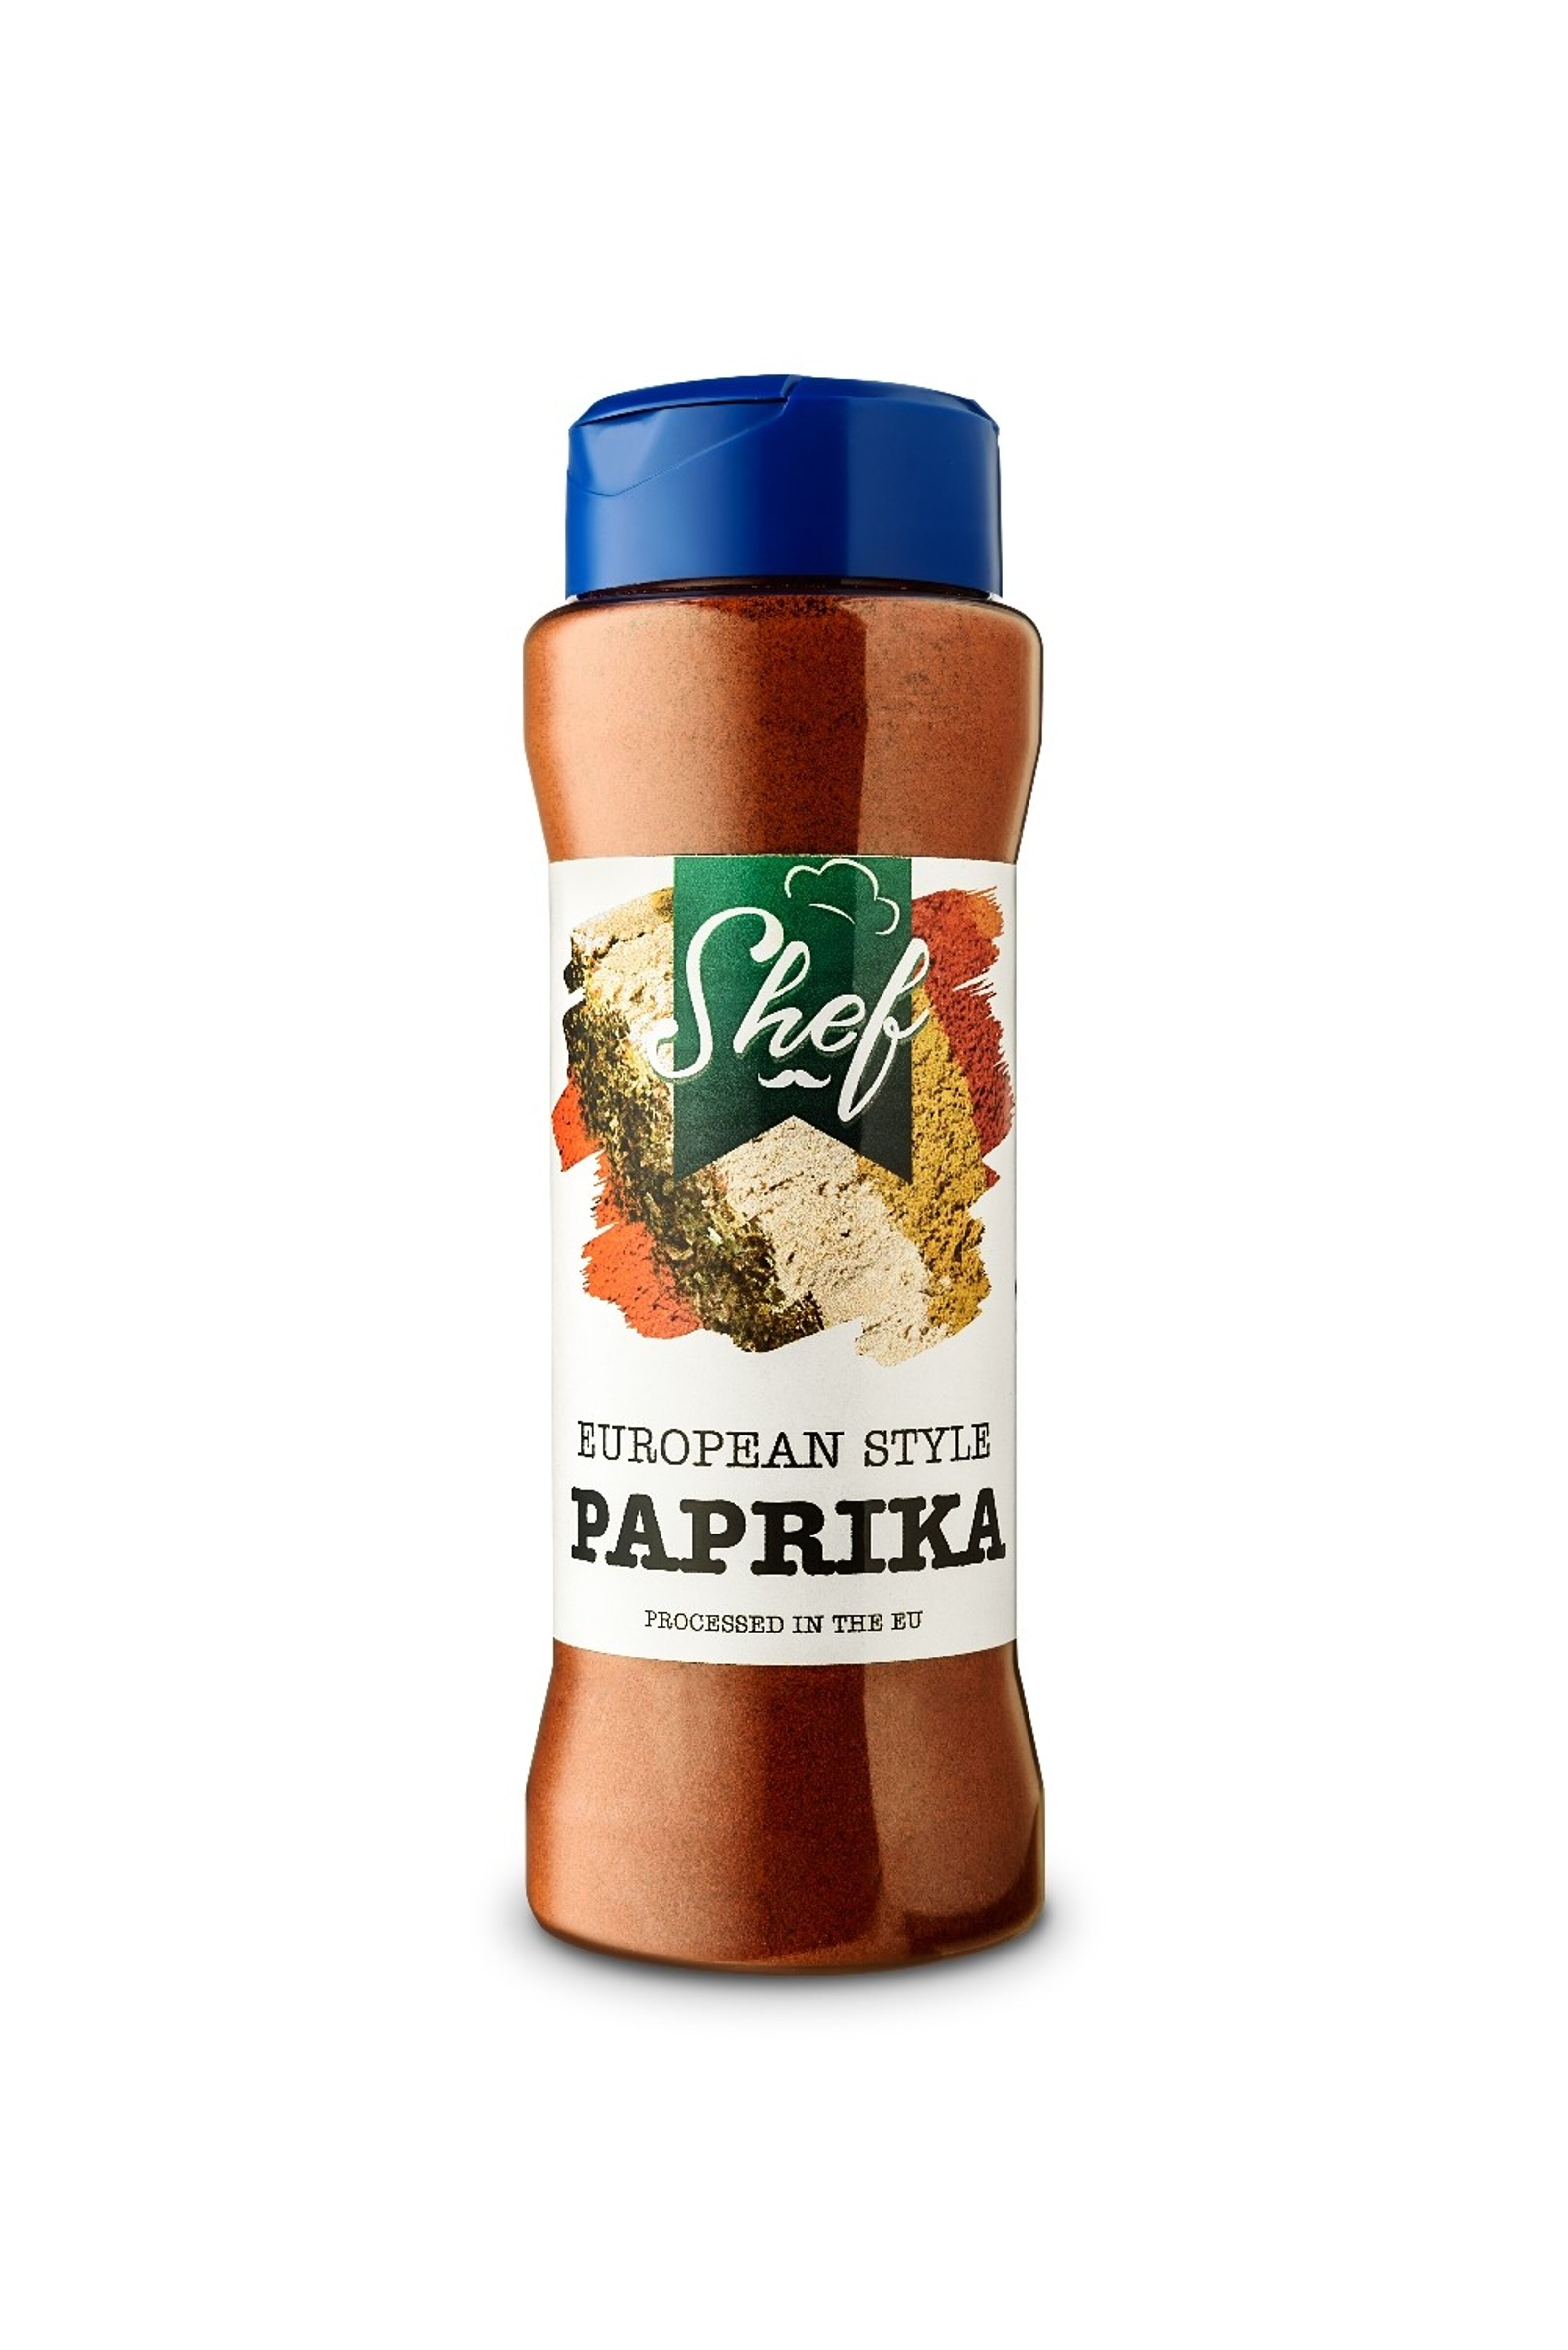 Paprika (épices, huiles et condiments)